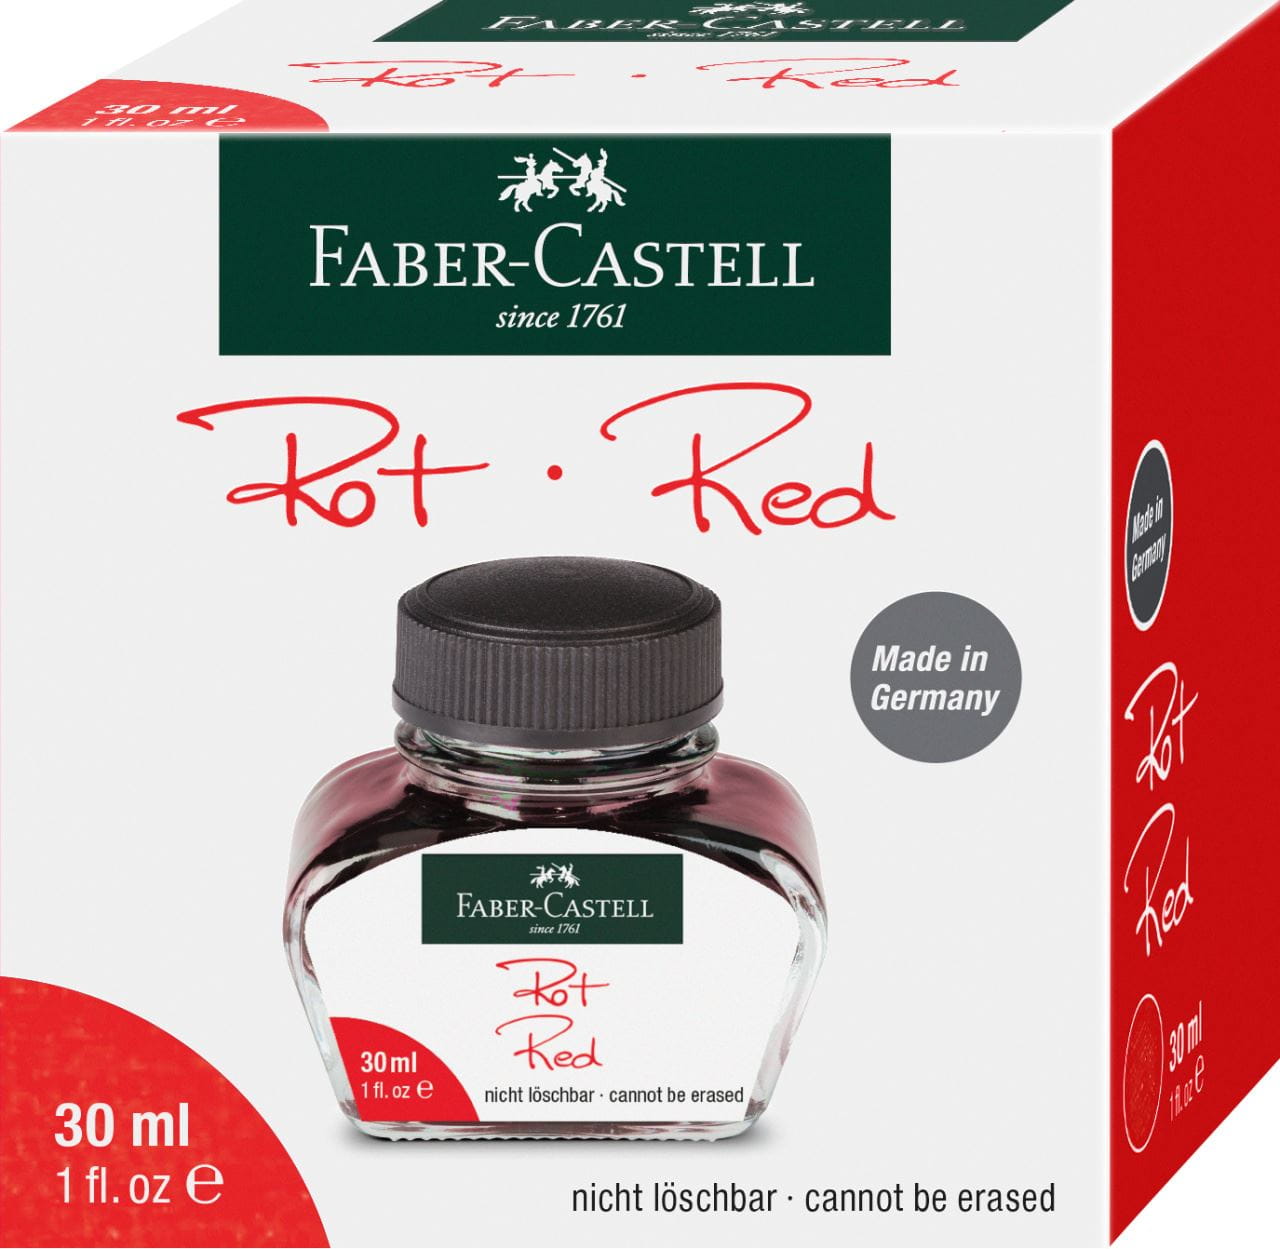 Faber-Castell - Ink bottle, 30 ml, ink red